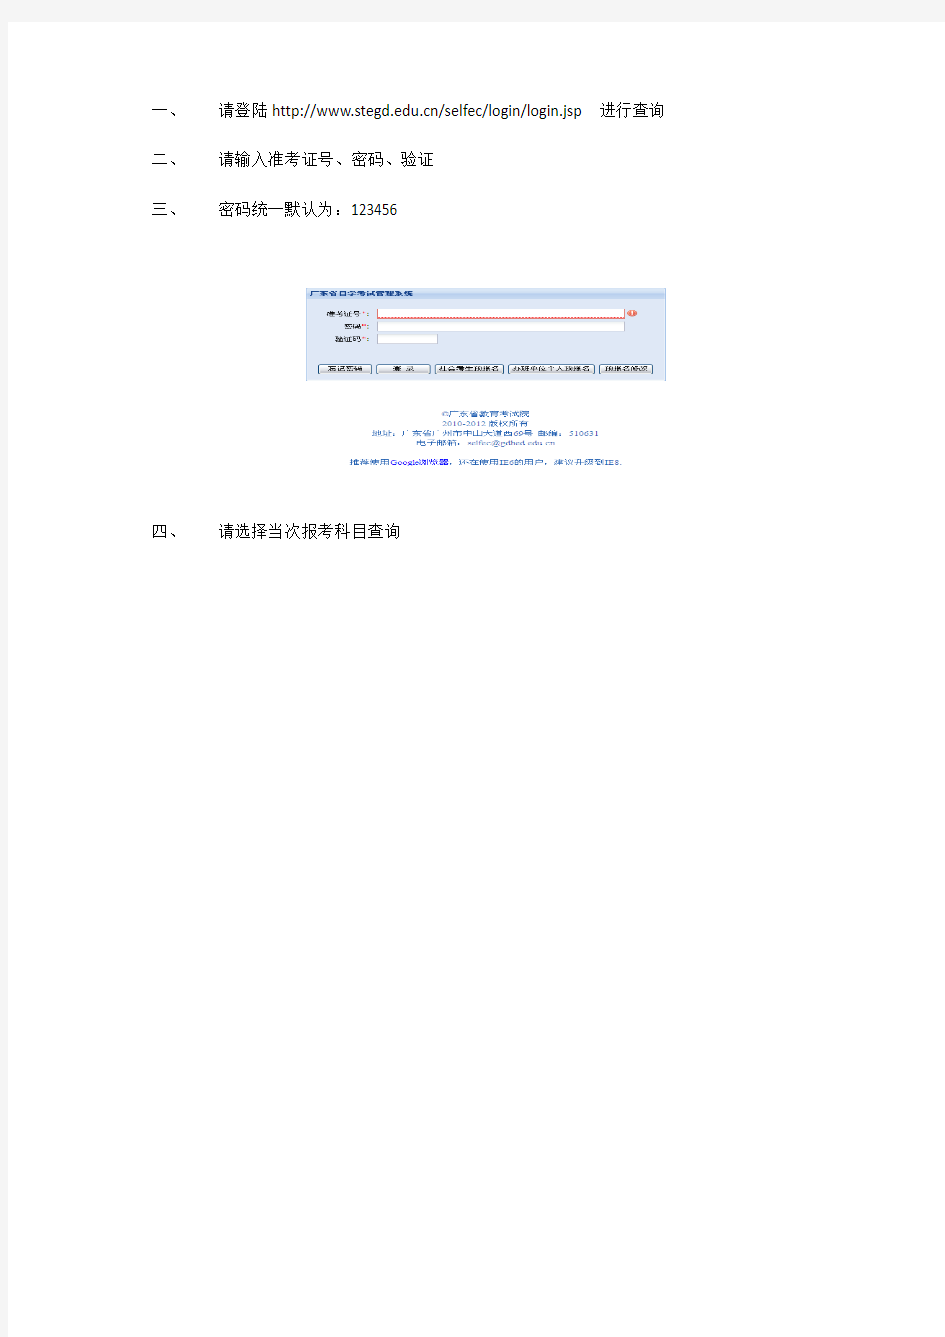 广东省自学考试管理系统考点查询方法